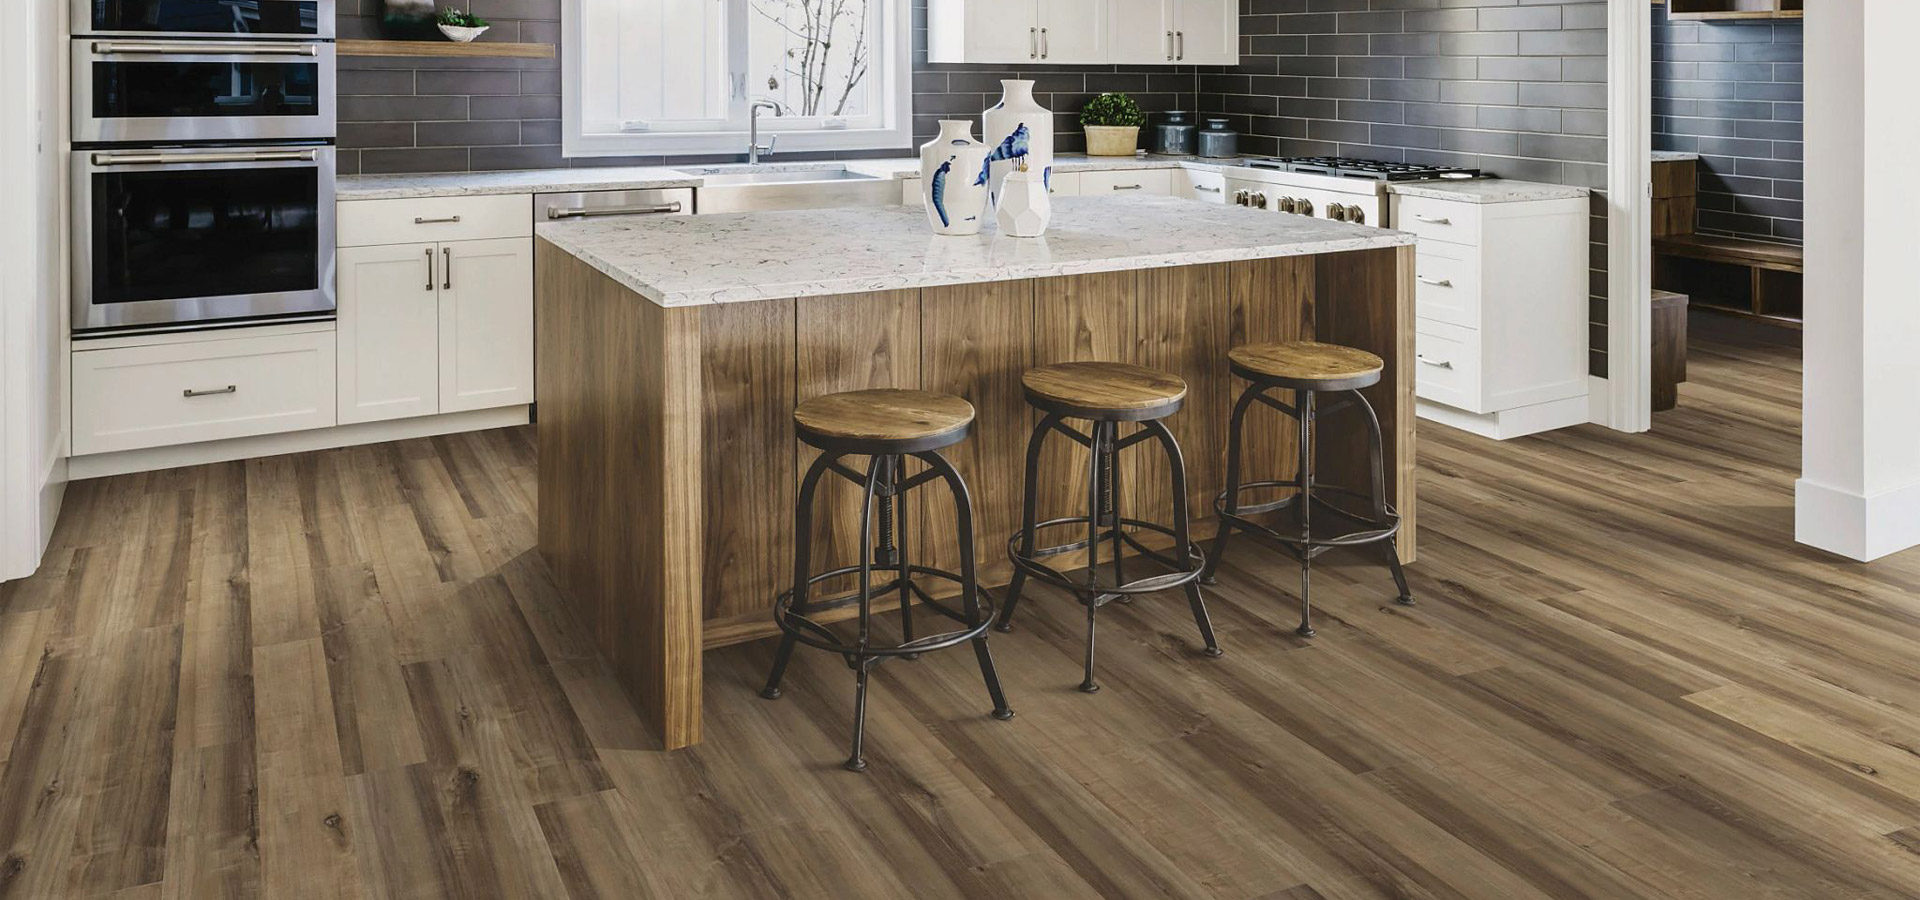 kitchen with brown hybrid vinyl flooring